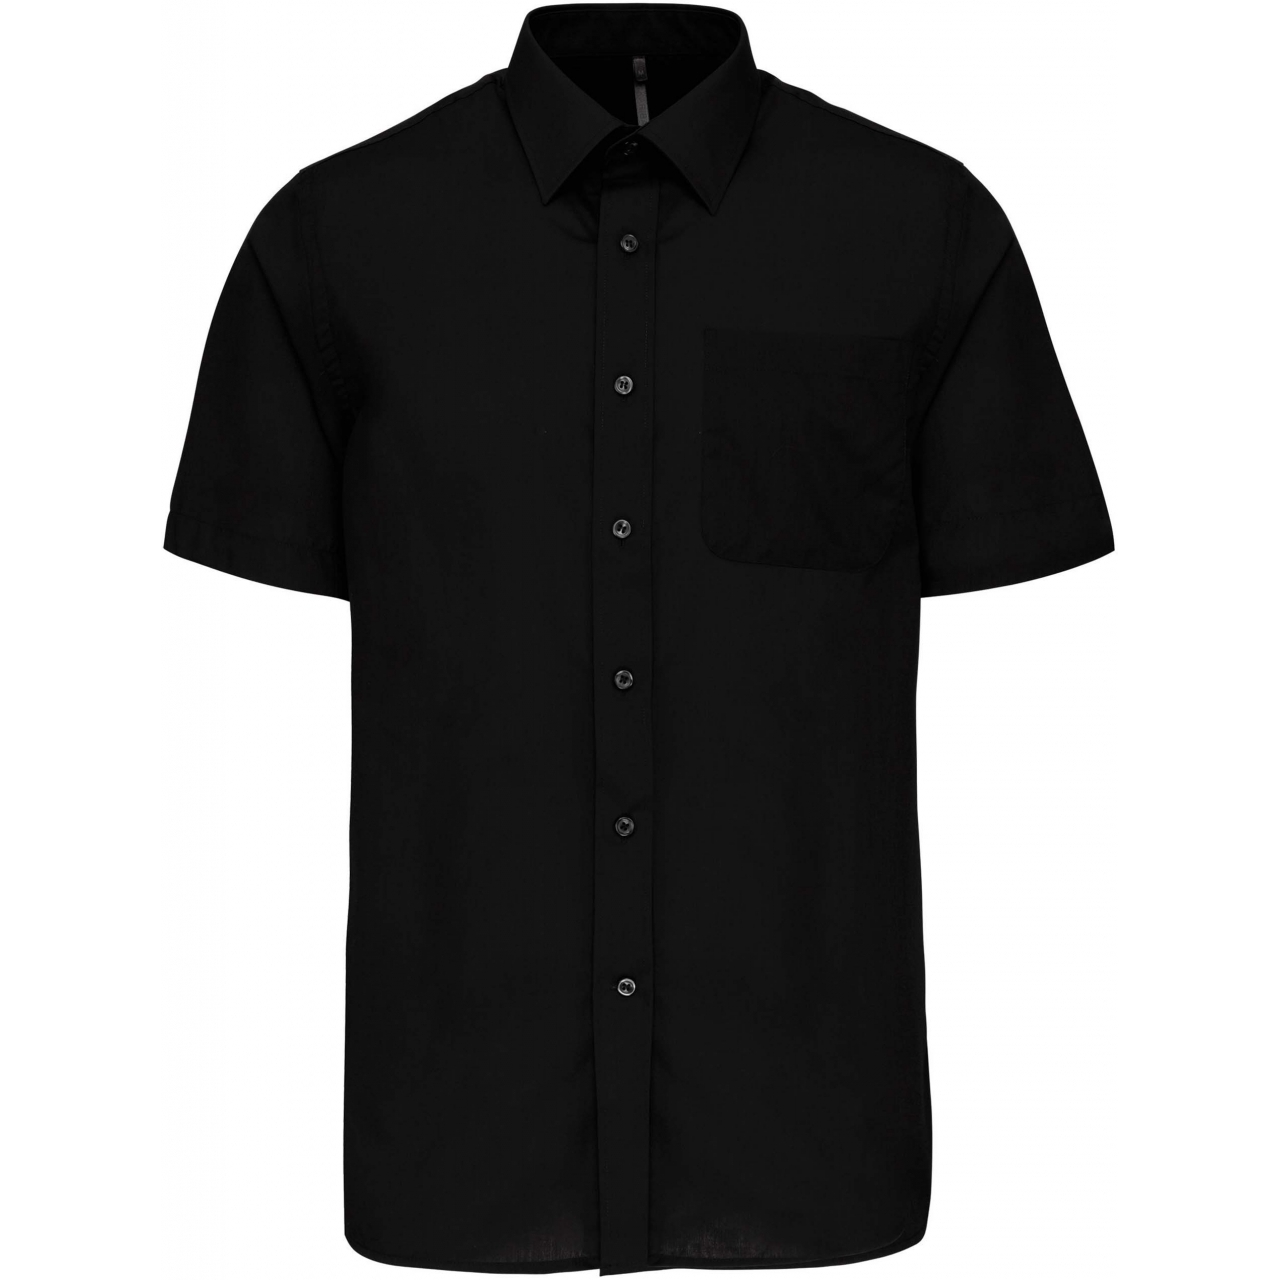 Pánská košile s krátkým rukávem Kariban ACE - černá, M